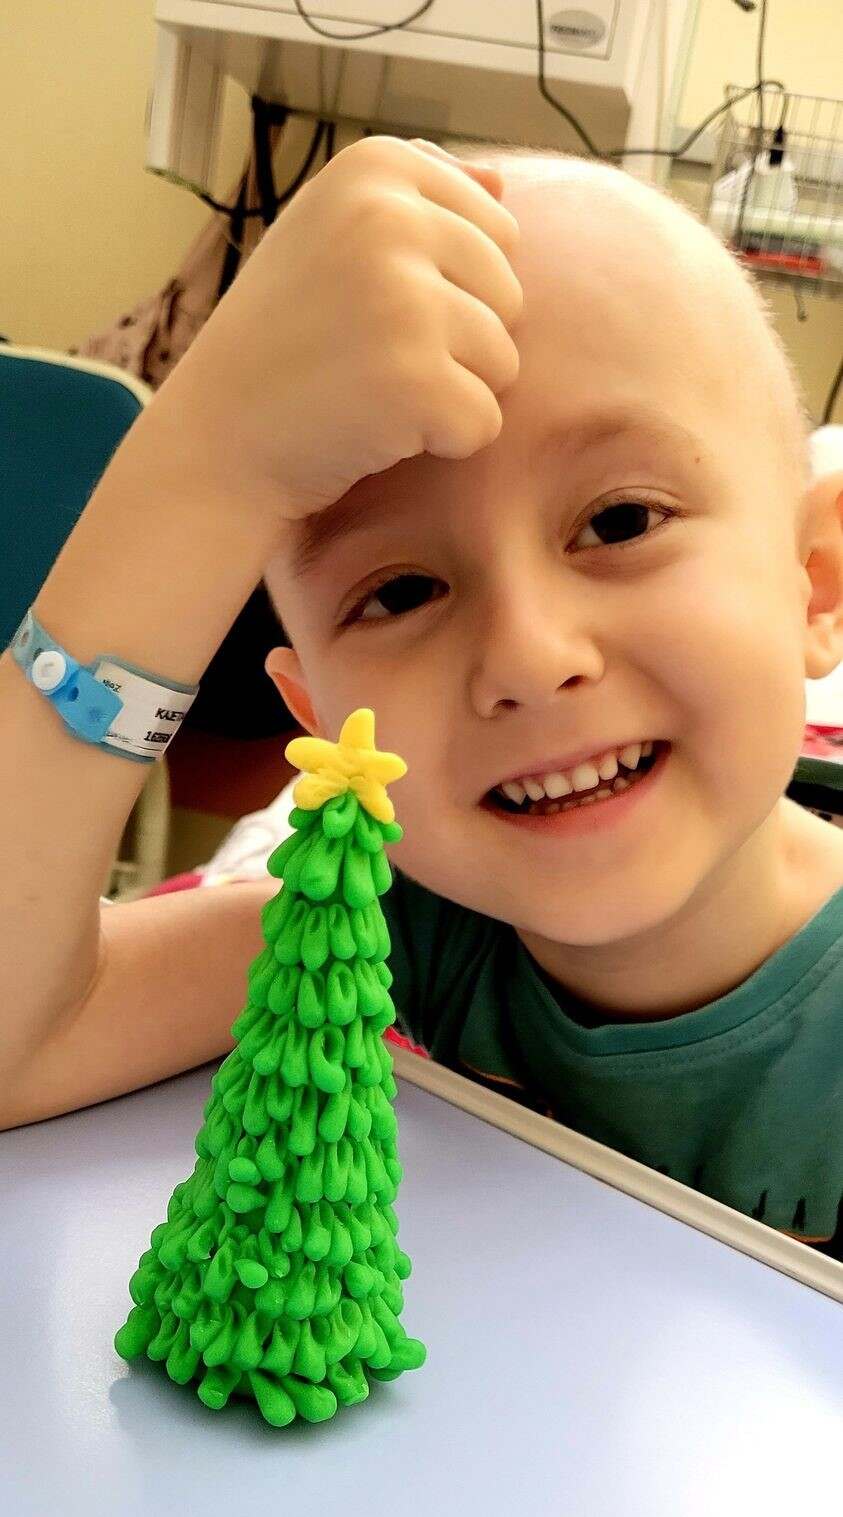 Chłopiec po chemioterapii bawi się figurką choinki